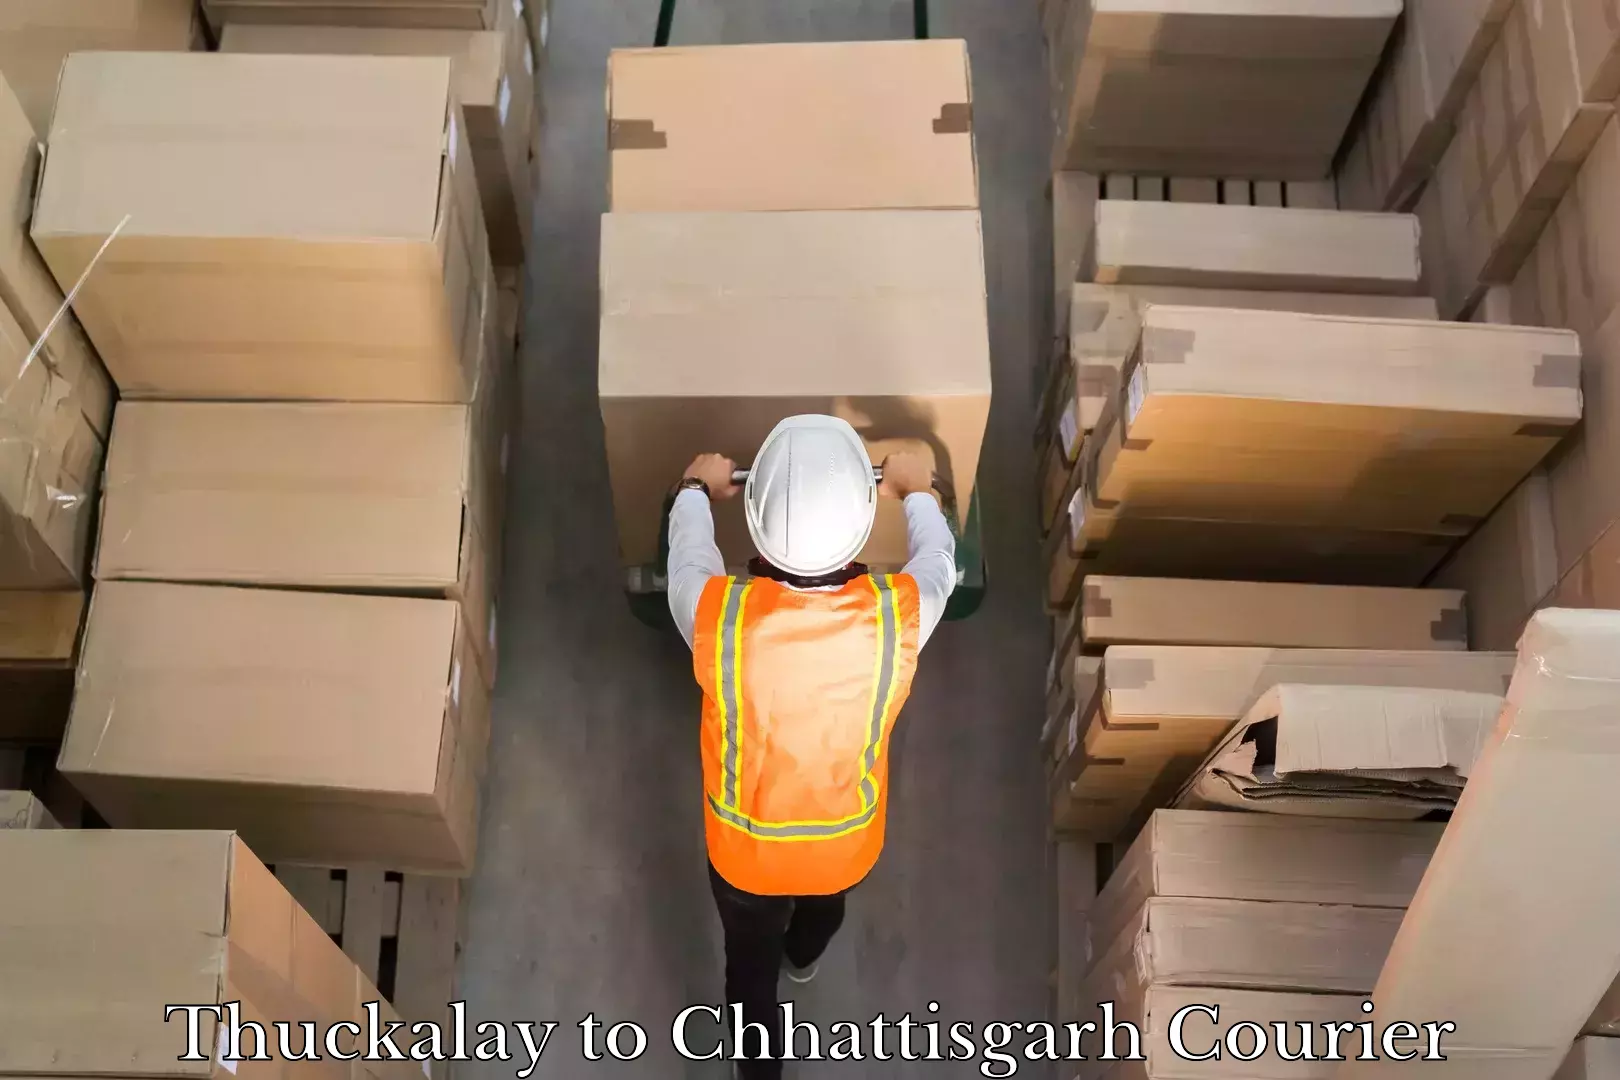 24-hour courier services Thuckalay to Chhattisgarh